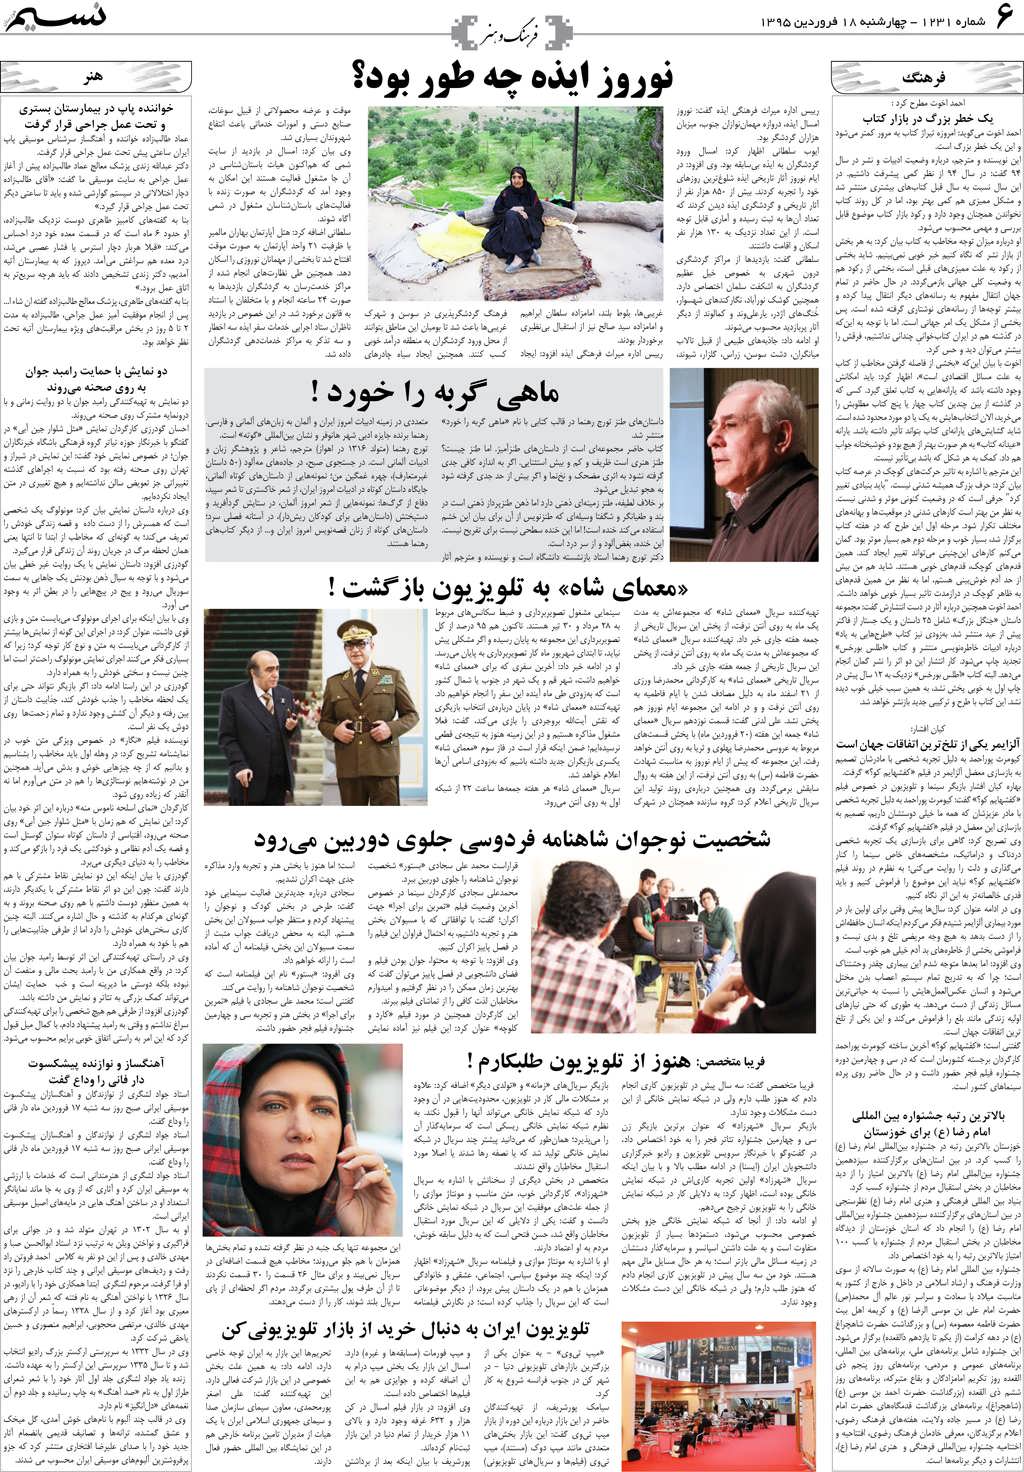 صفحه فرهنگ و هنر روزنامه نسیم شماره 1231